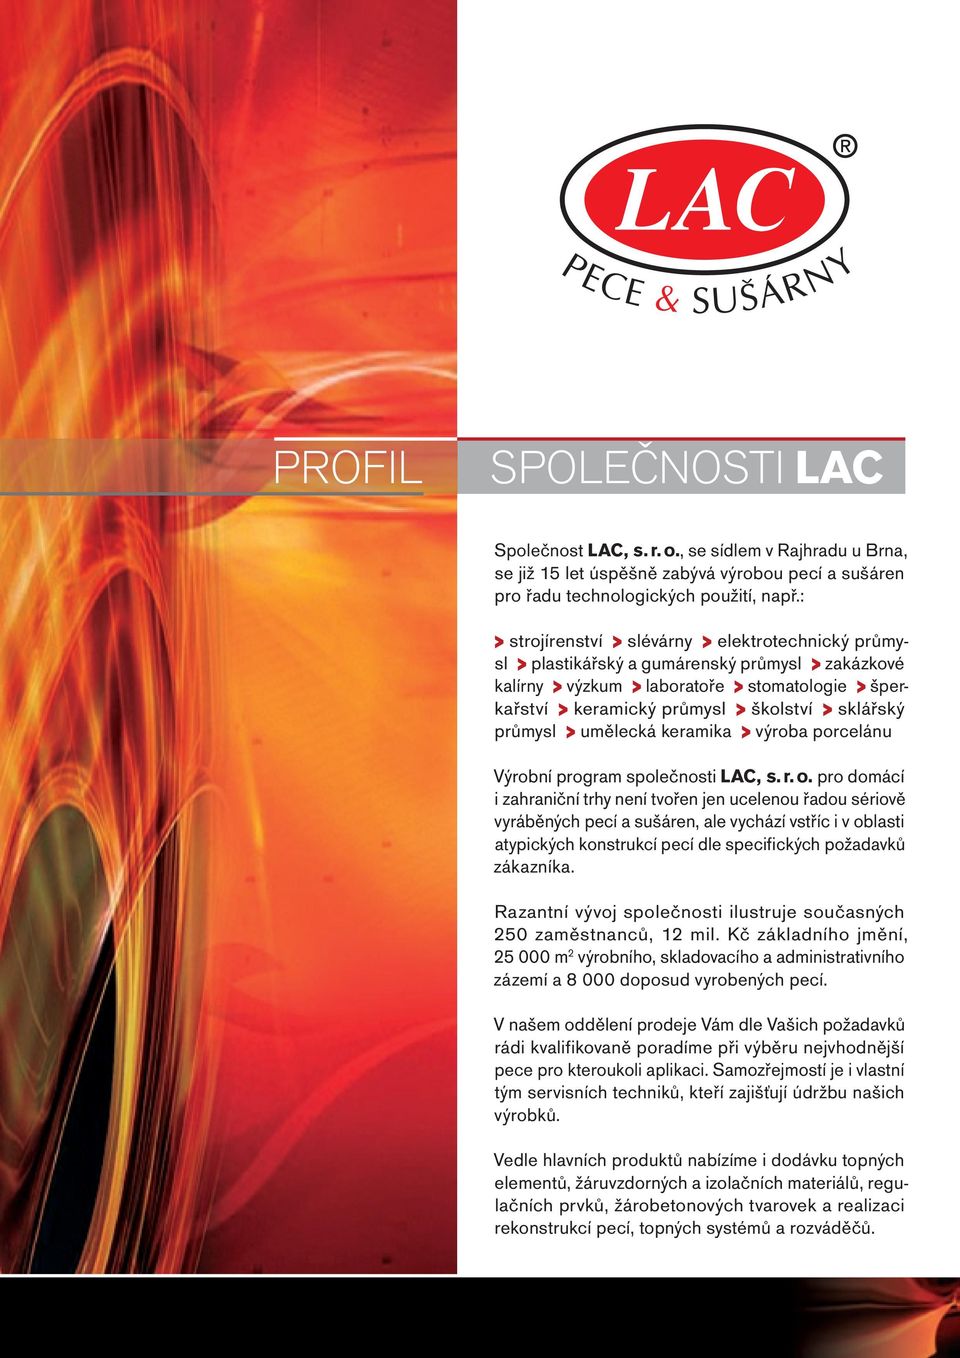 sklářský průmysl > umělecká keramika > výroba porcelánu Výrobní program společnosti LAC, s. r. o.